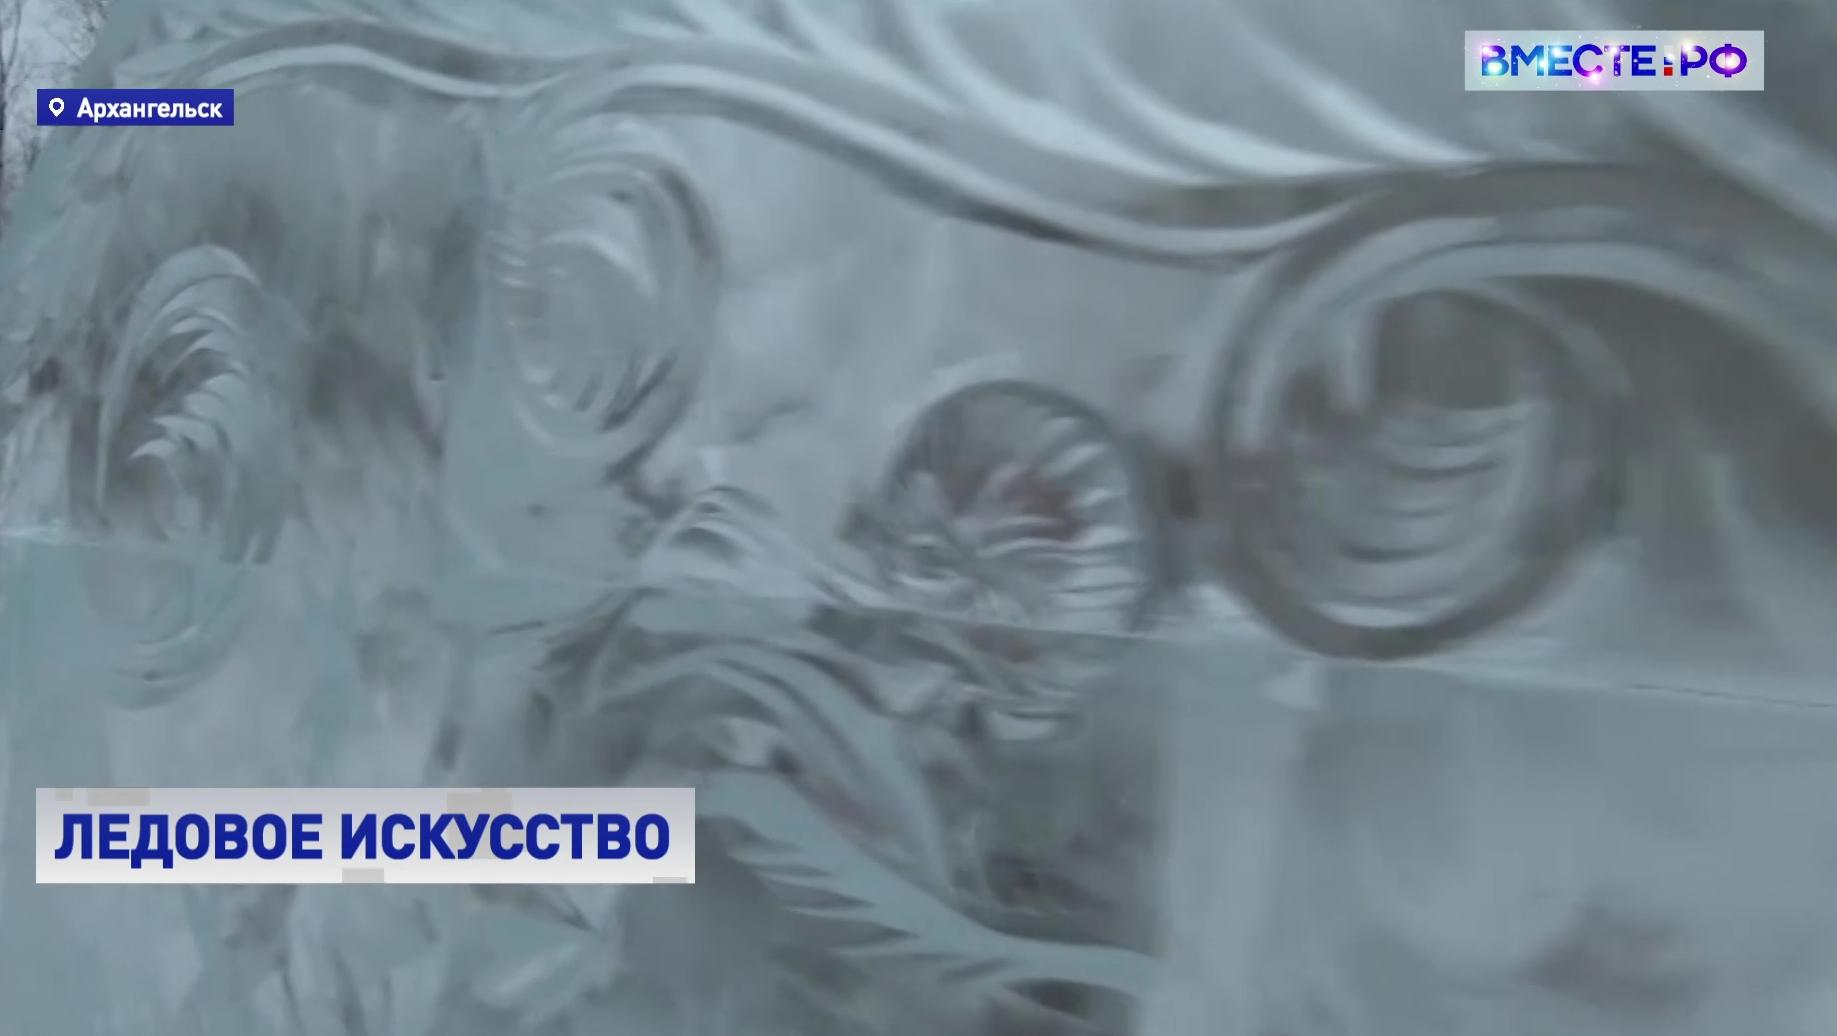 РЕПОРТАЖ: Ледовые скульптуры в Архангельске